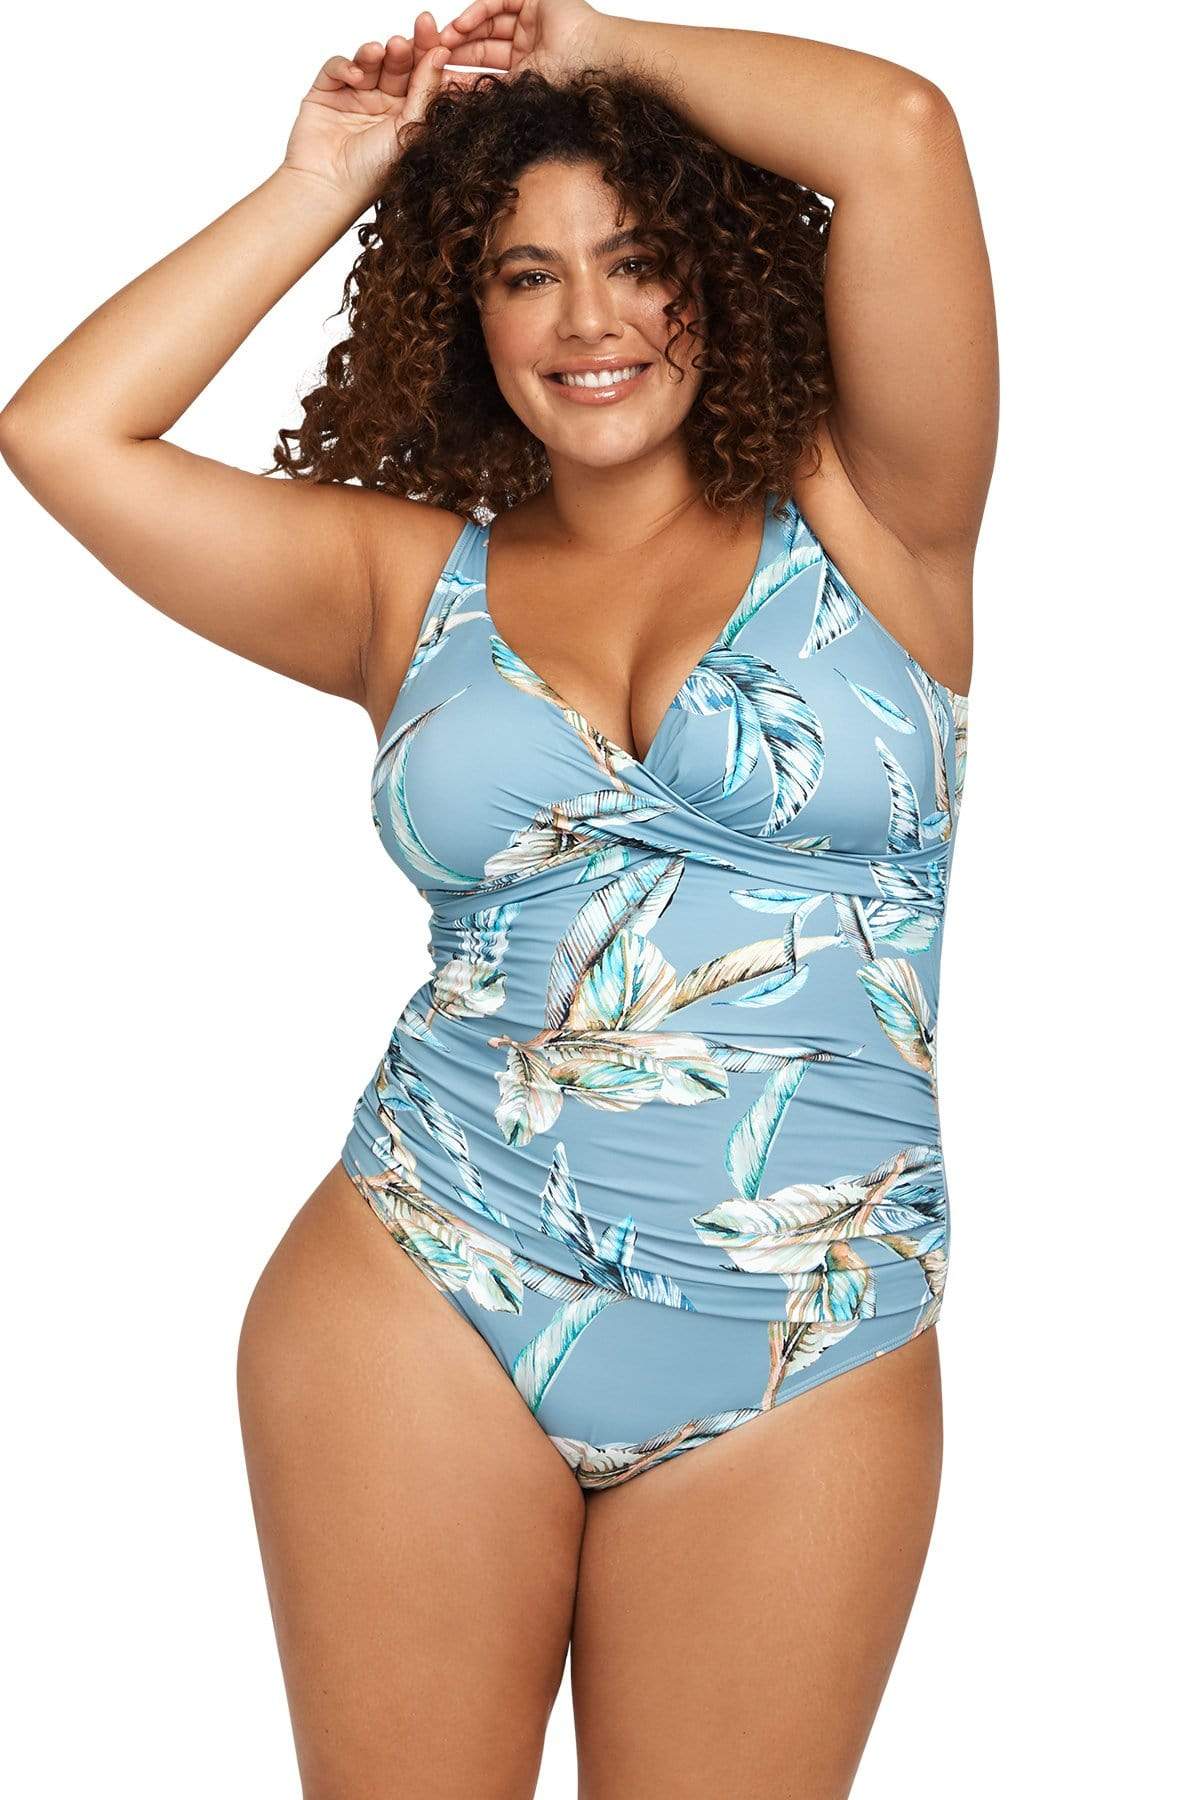 Artesands Swimwear. CEZANNE Delacroix One Piece . Curvy Swimwear. Plus Size swimwear for women.